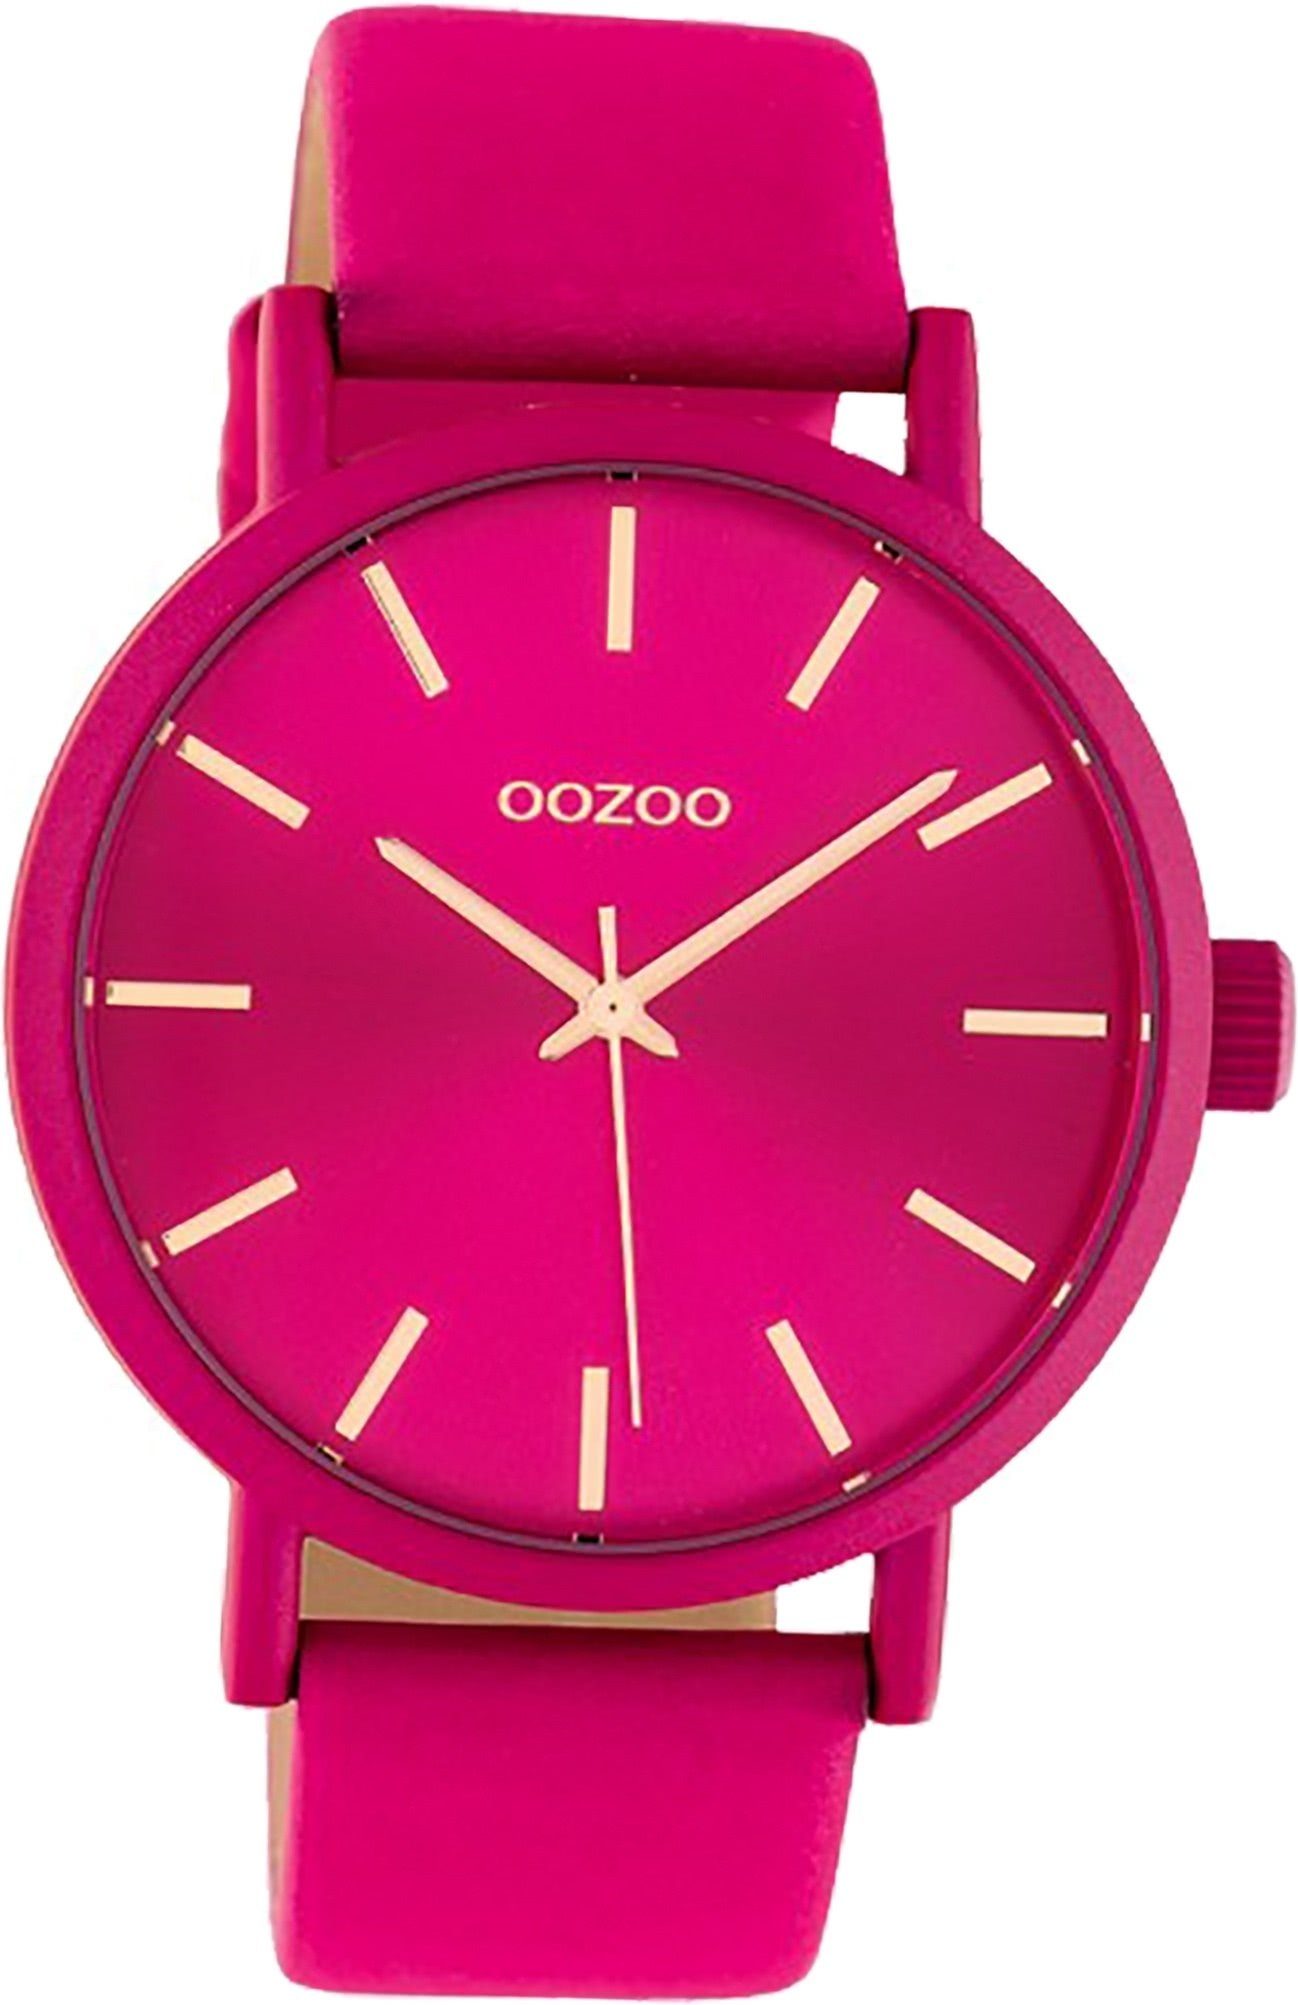 OOZOO Quarzuhr Oozoo Leder Damen Uhr groß fuchsia, Damenuhr Gehäuse, Lederarmband Analog, C10448 42mm) rundes (ca violett